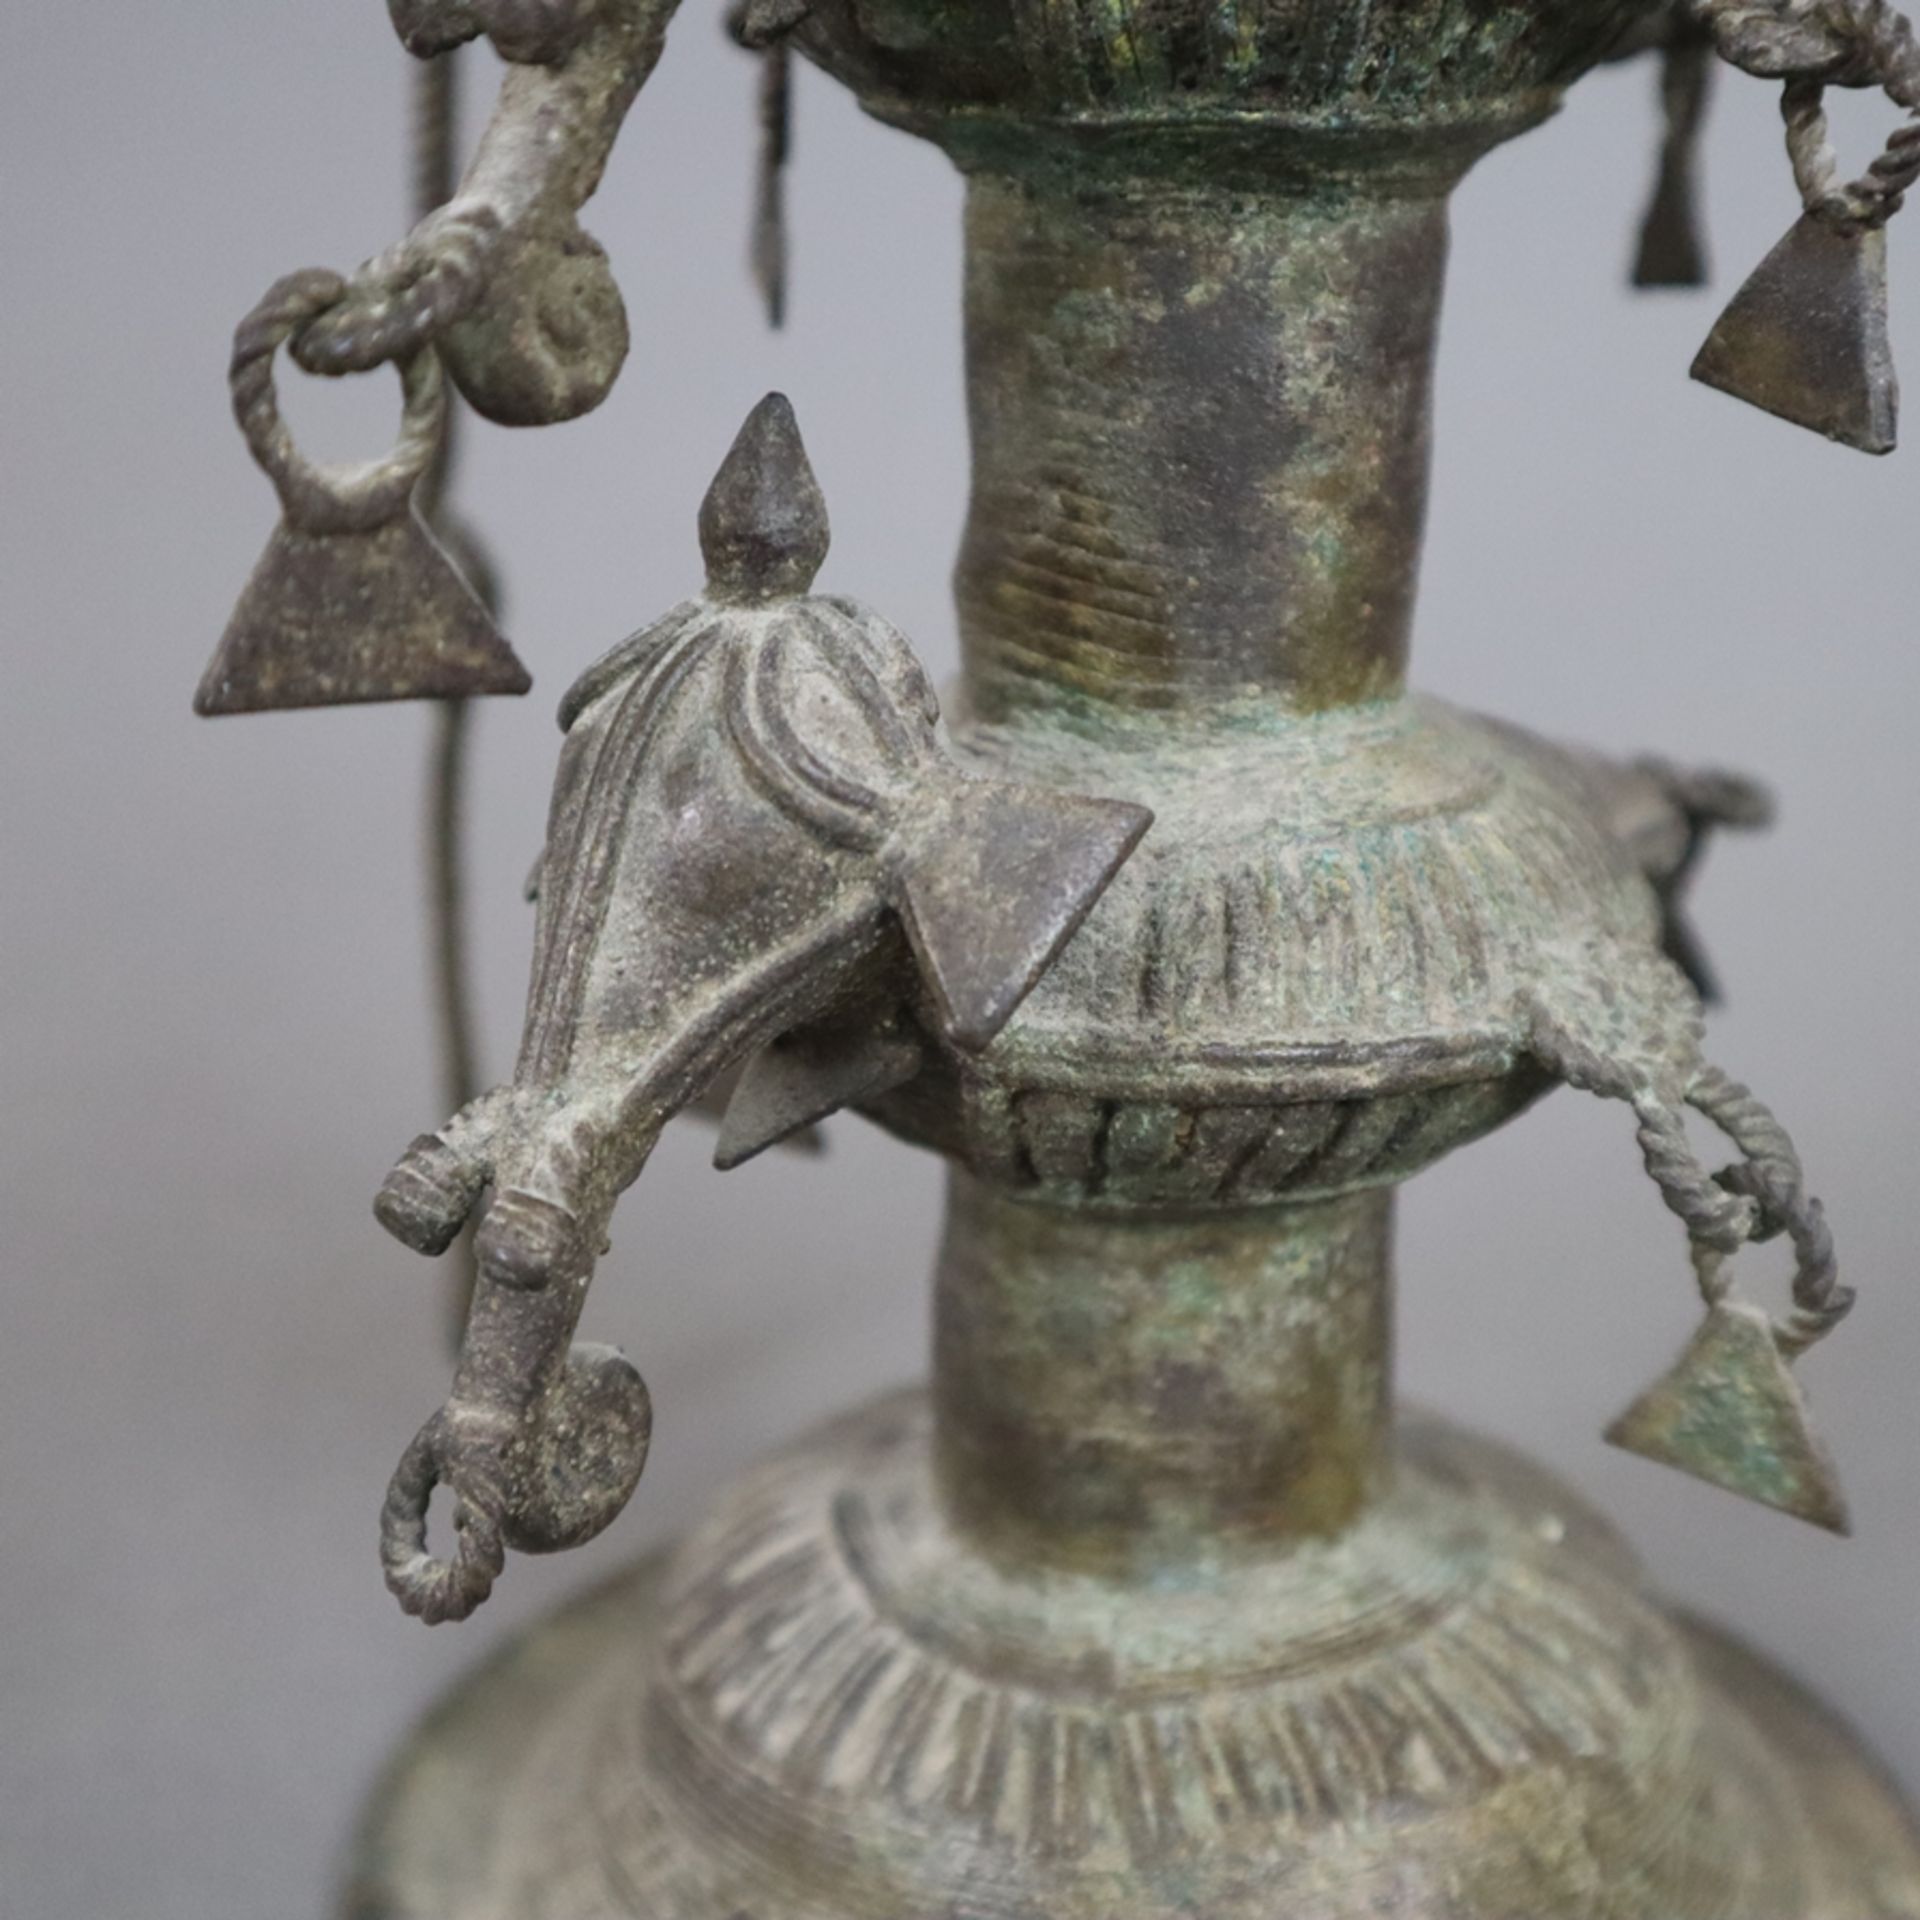 Hohe Öllampe - Indien, Bastar-Region, Bronze mit Alterspatina, über gewölbtem Fuß gegliederter Scha - Image 7 of 9